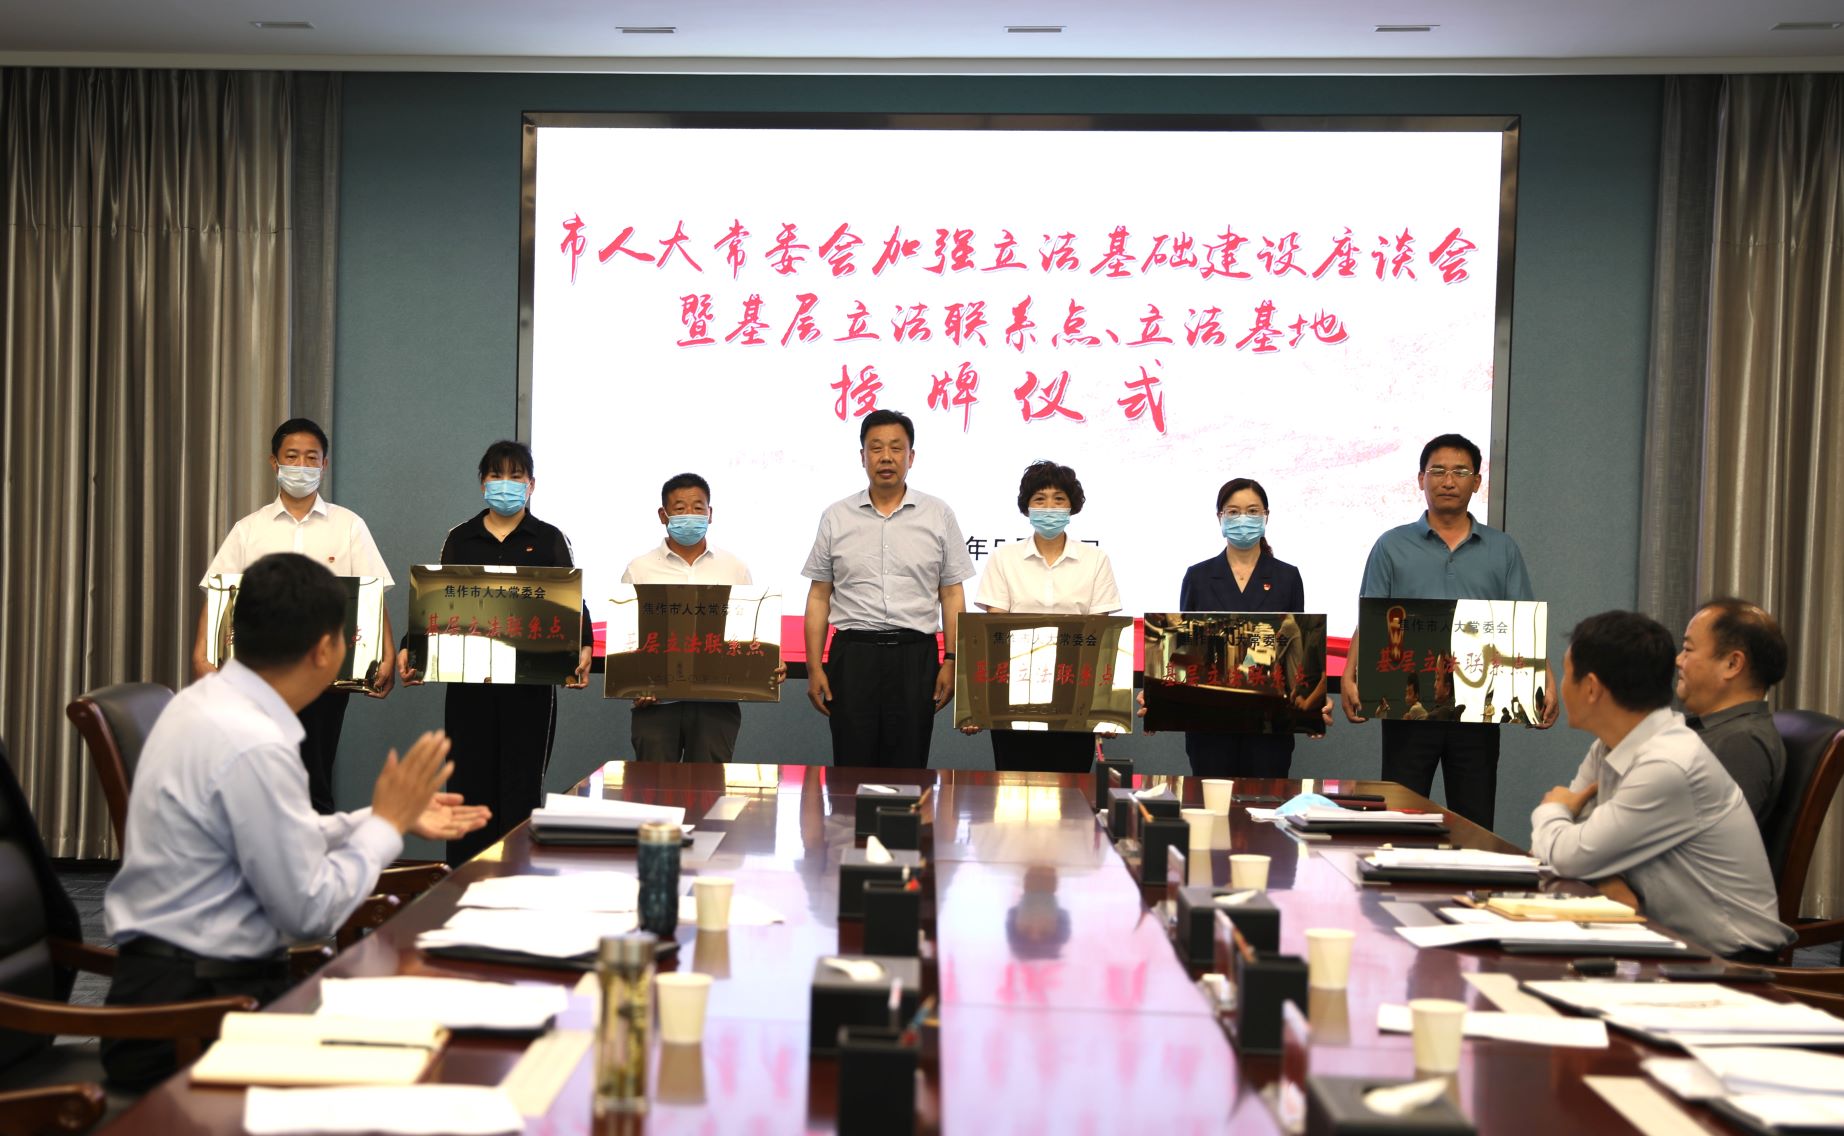 焦作市人大常委会授予云台山风景名胜区管理局“基层立法联系点”牌匾。